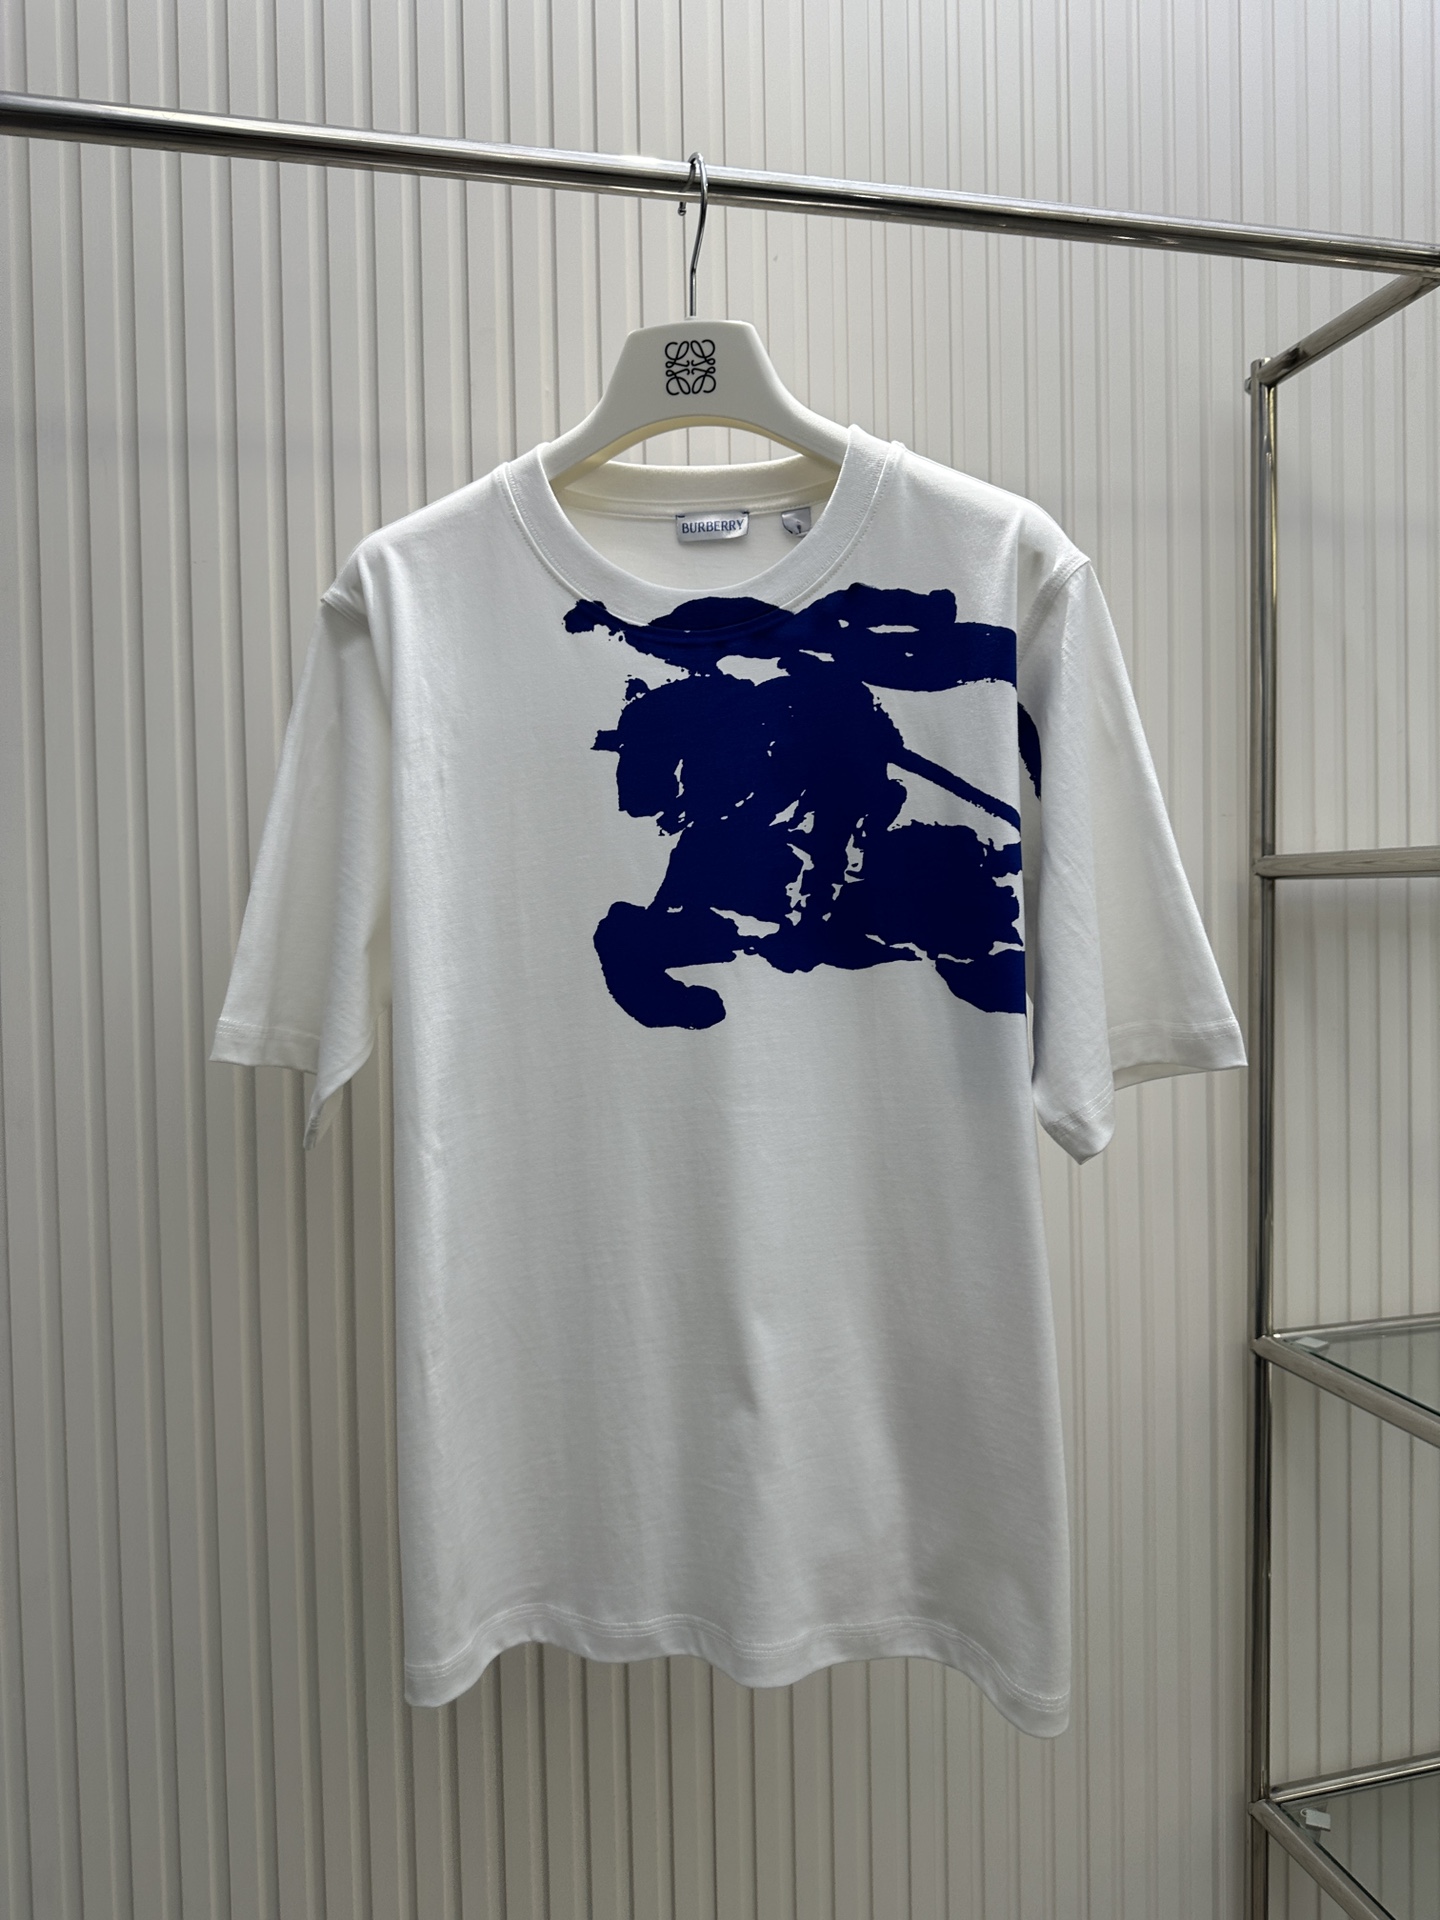 Burberry Clothing T-Shirt Blue Printing Short Sleeve